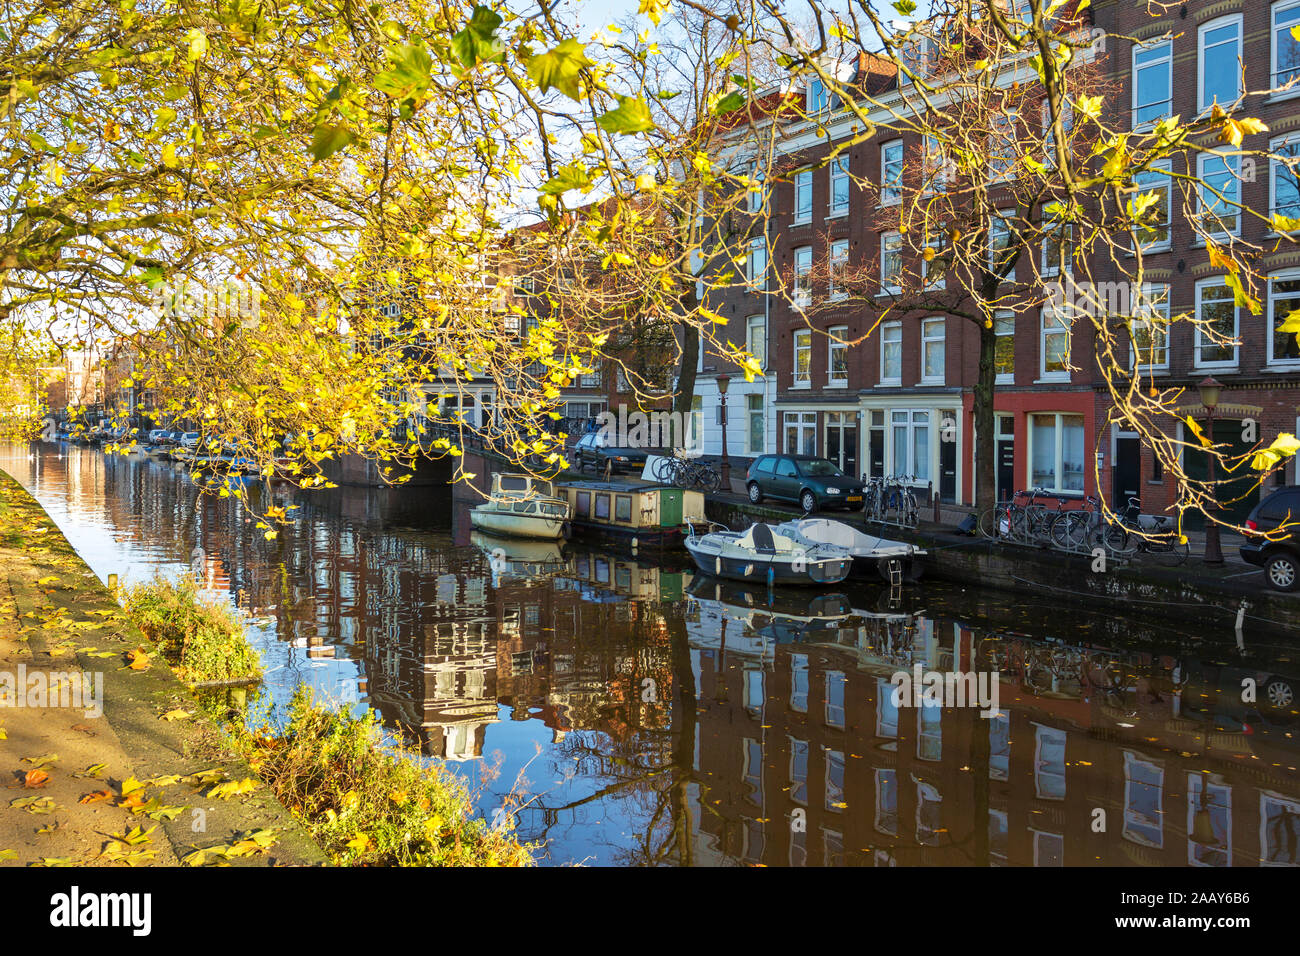 AMSTERDAM HOLLAND CANAL IM HERBST mit den goldenen Blätter an den Bäumen und Ästen HÄNGEND ÜBER DEM WASSER Stockfoto